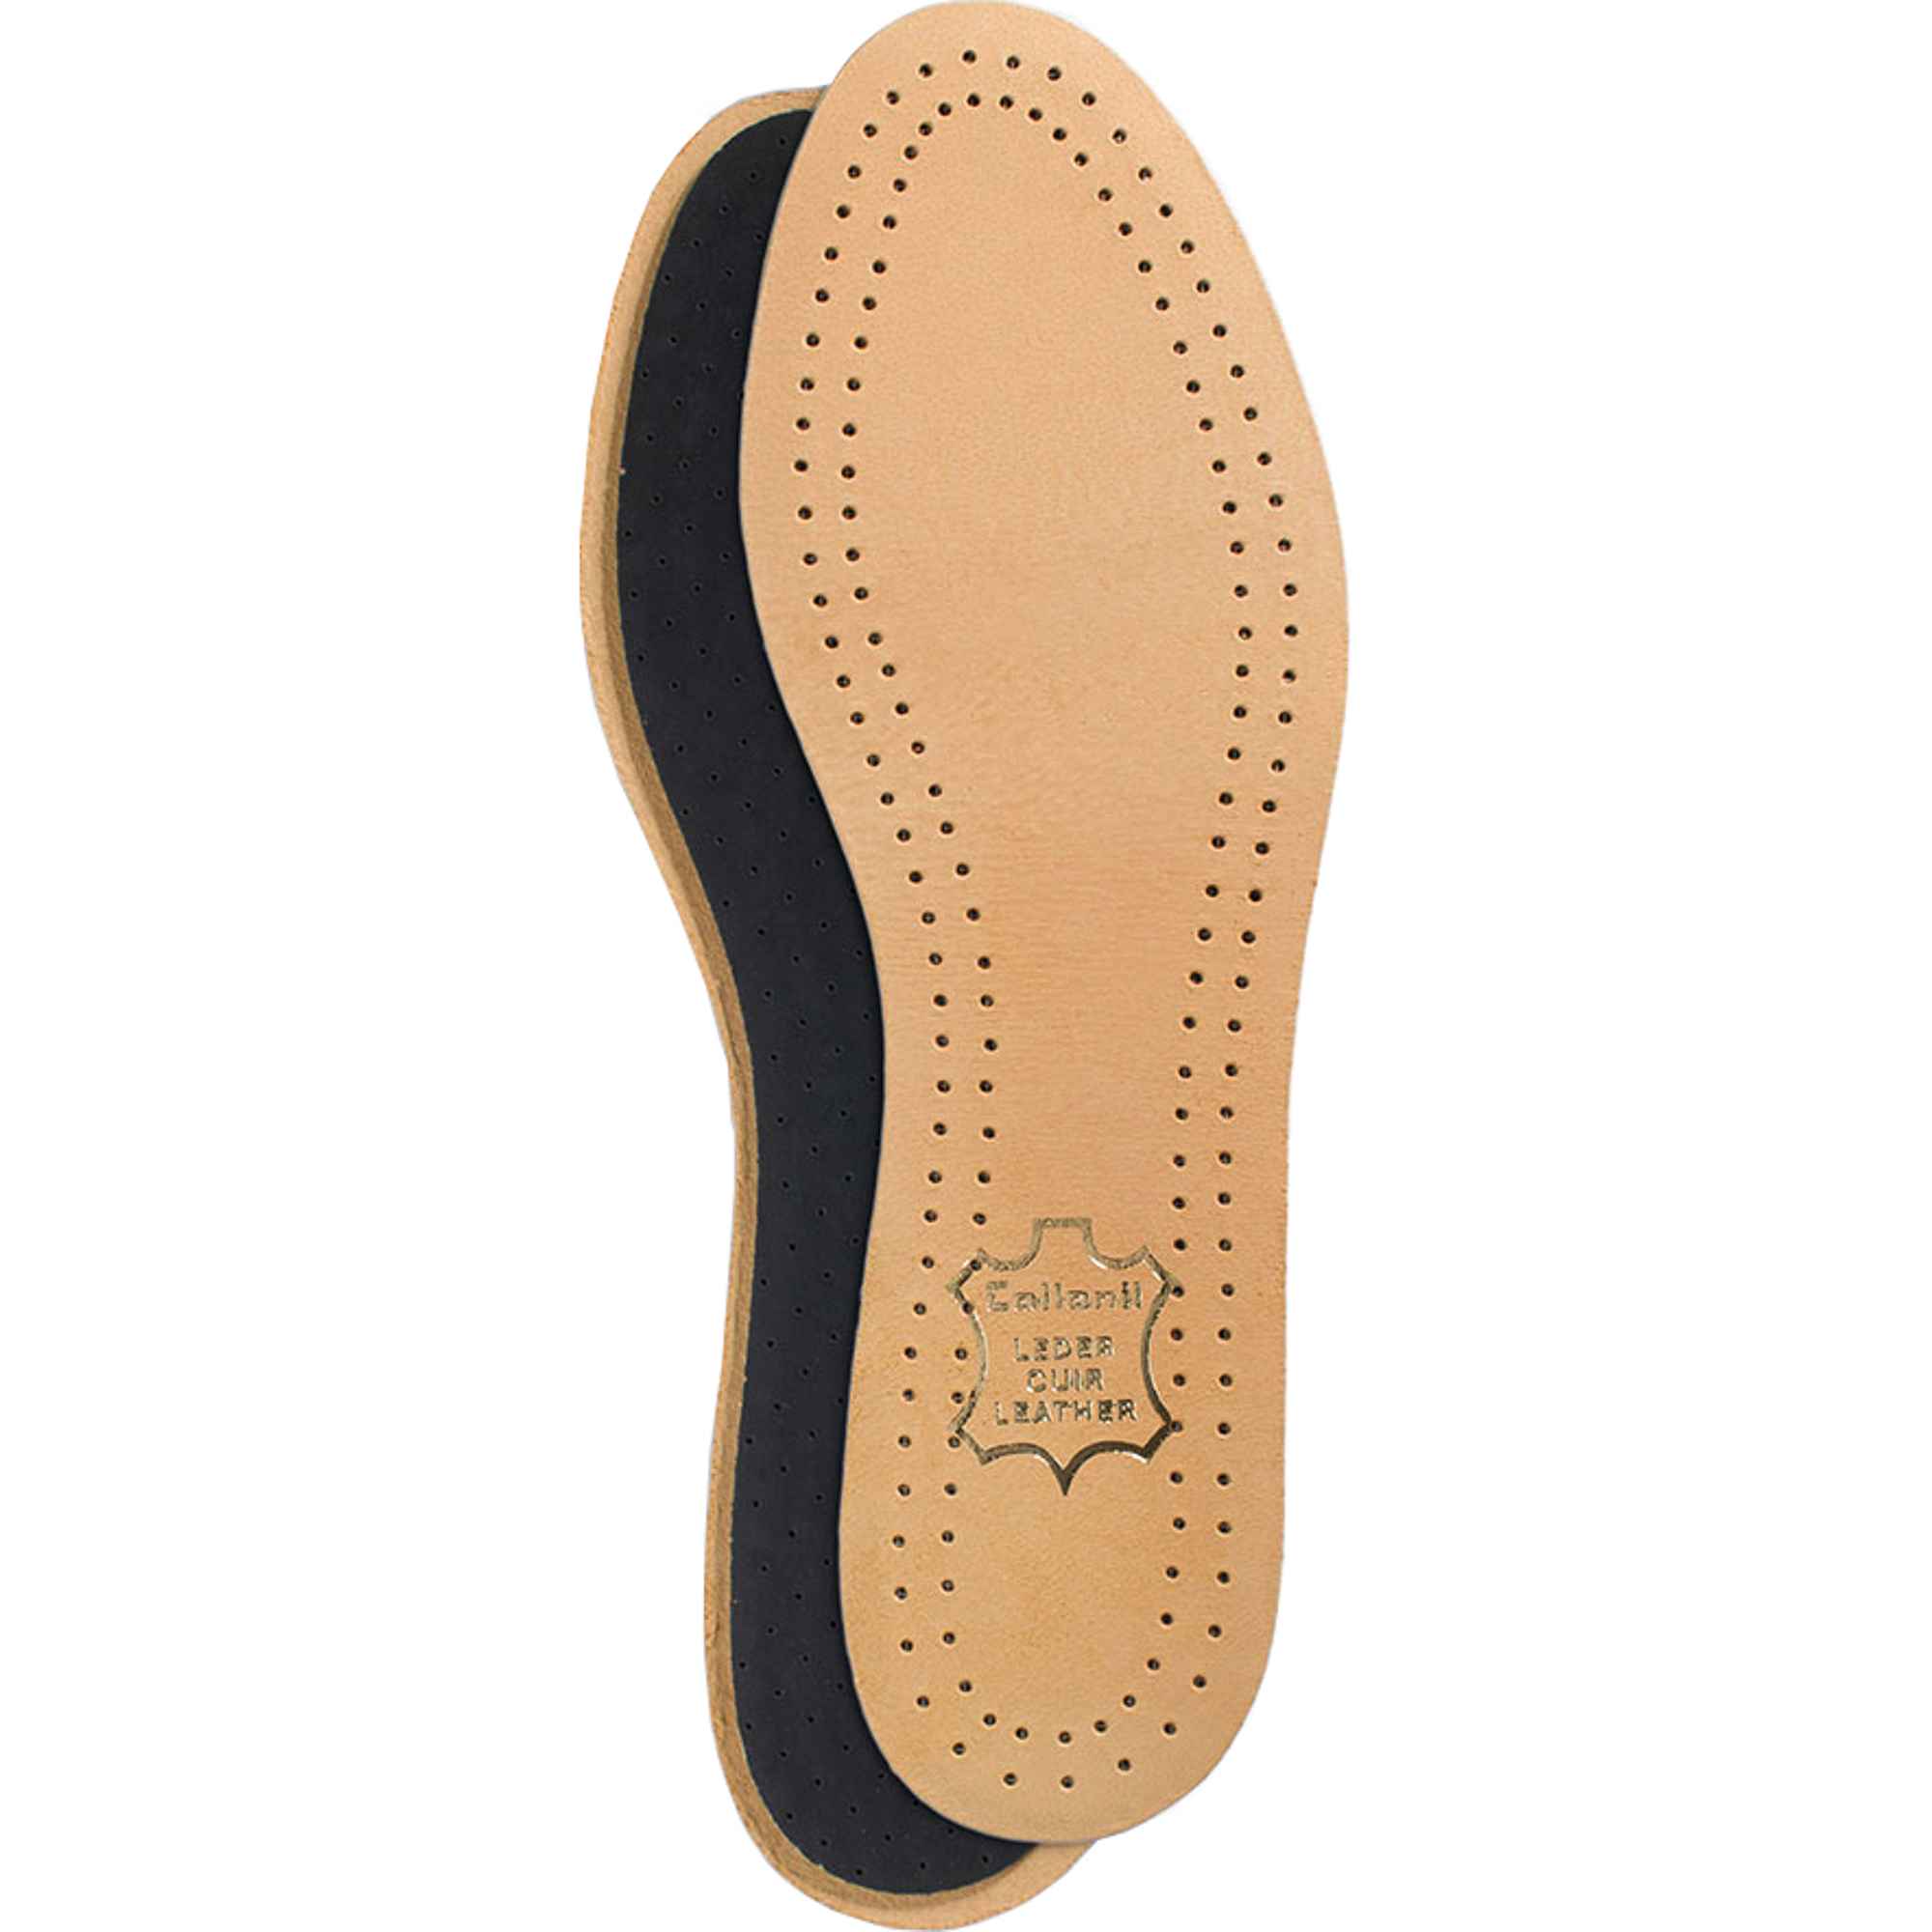 Стельки для обуви Collonil Luxor размер 40 стельки для обуви scholl gelactiv sport для женщин